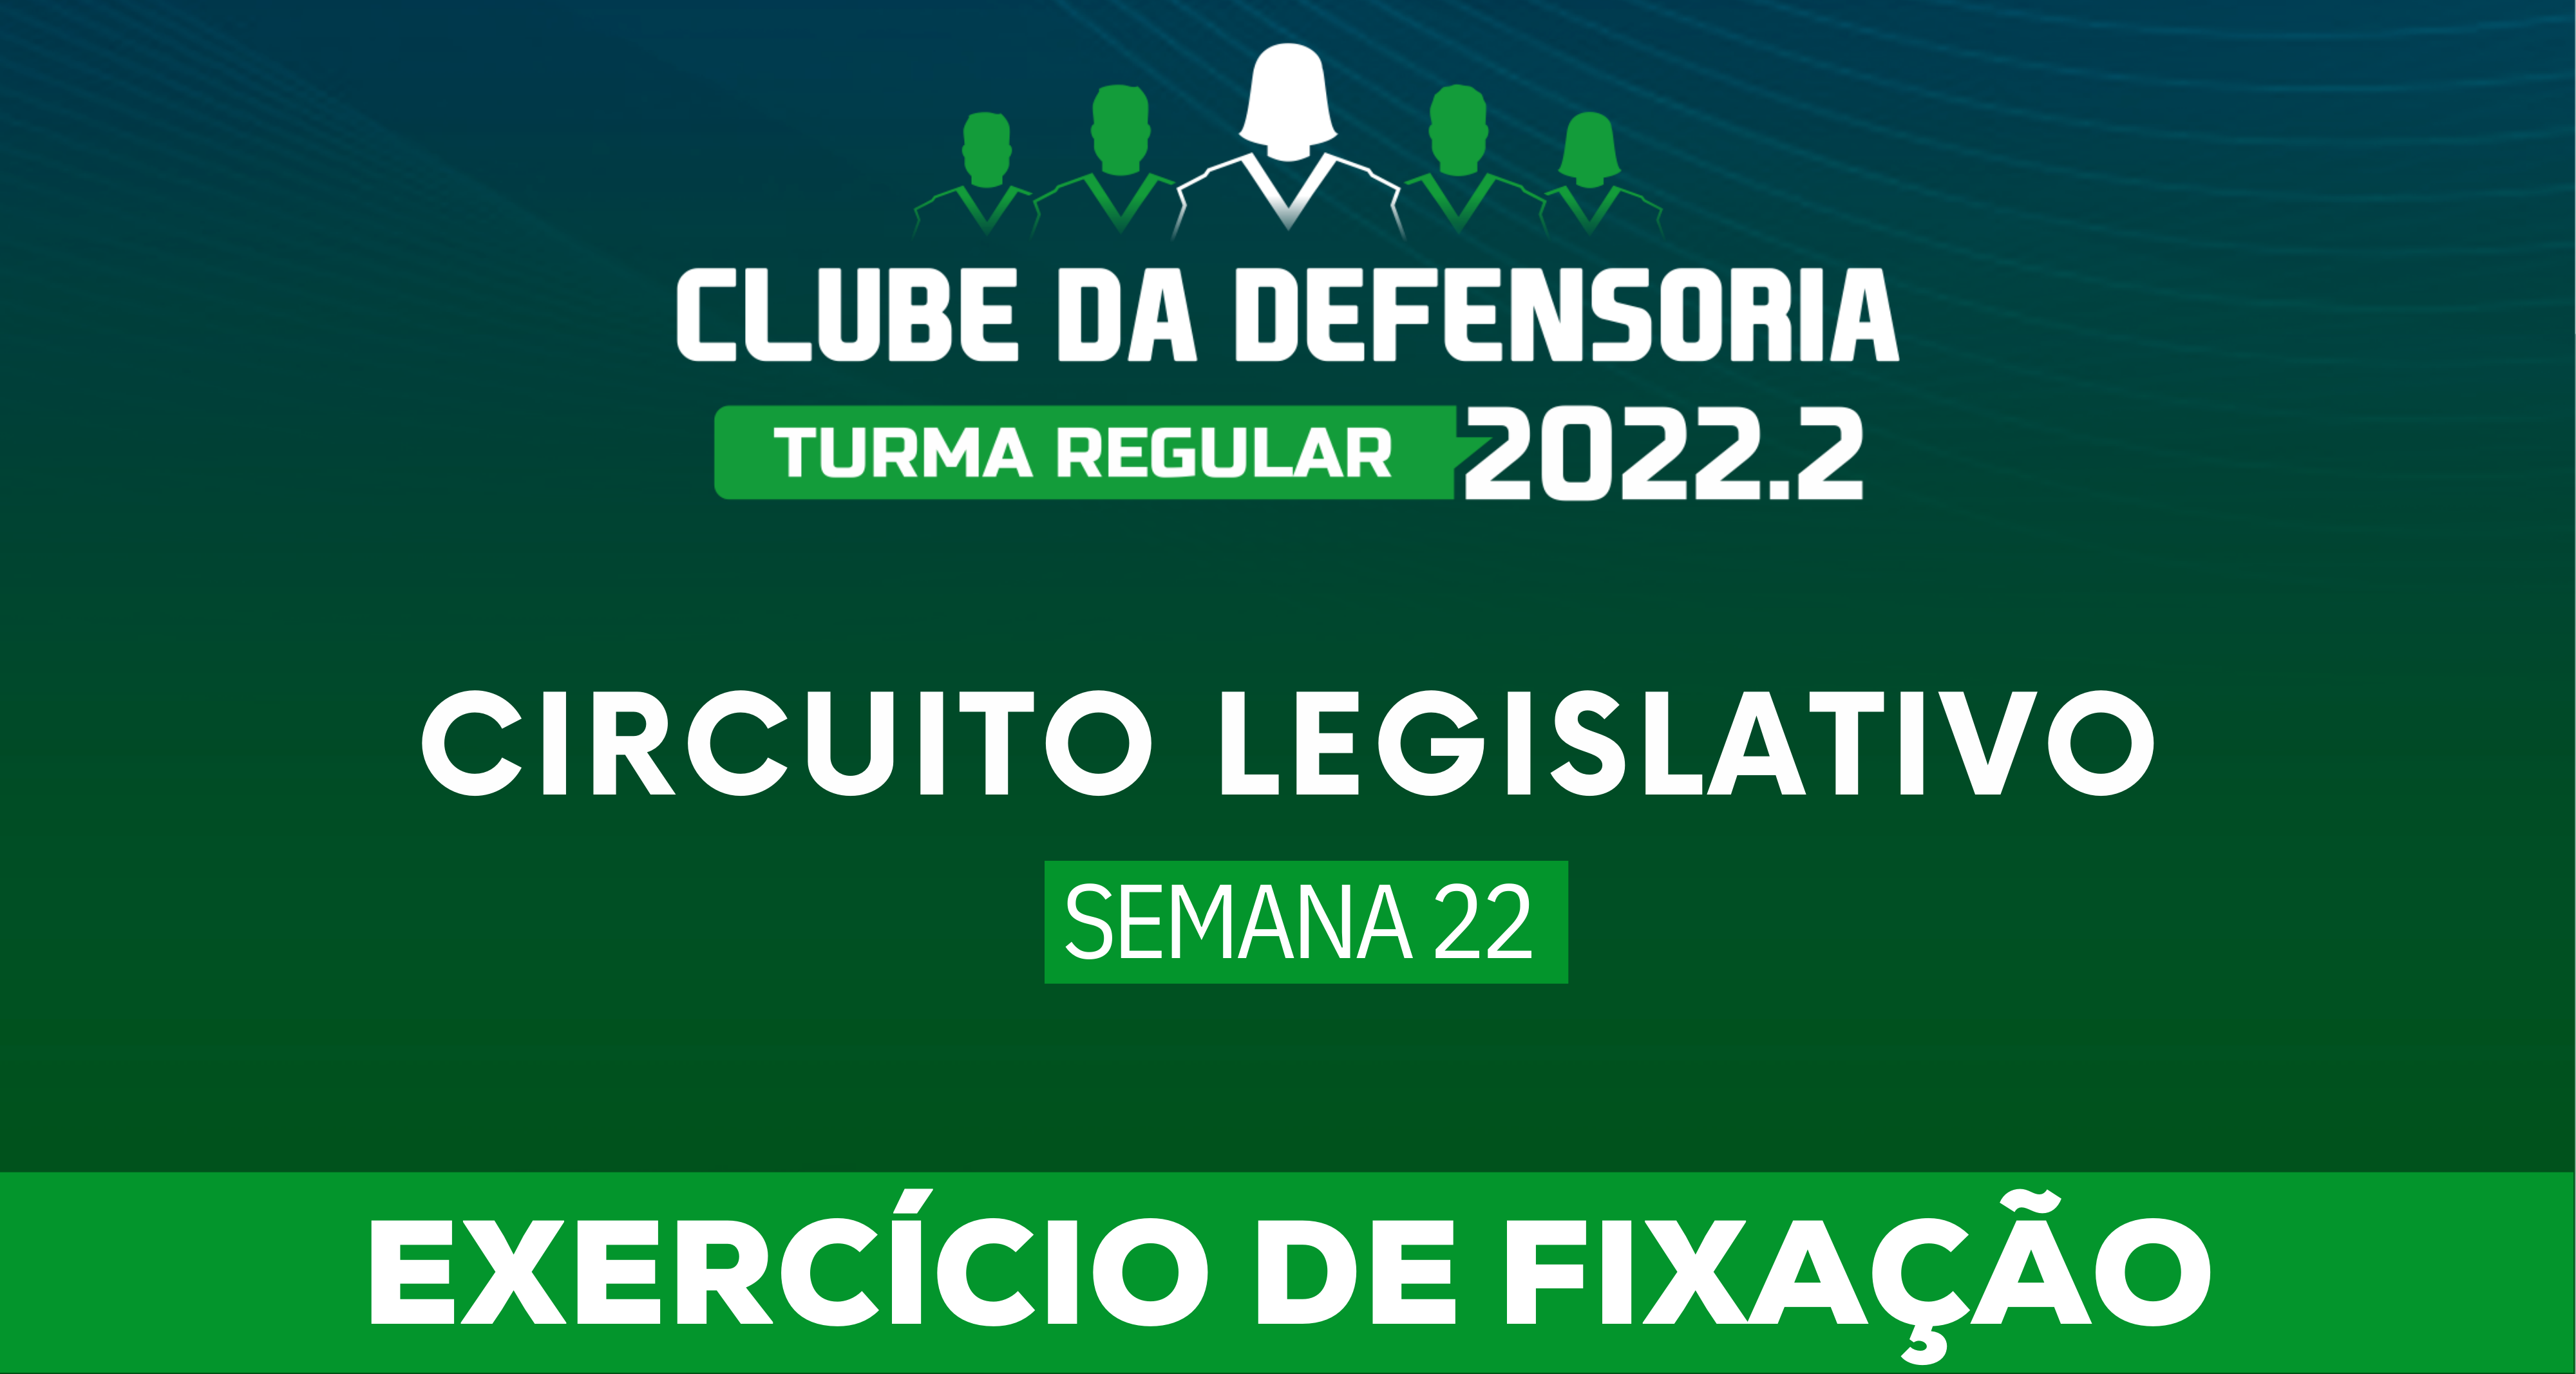 Circuito Legislativo 2022.2 (Clube da Defensoria - Semana 22)